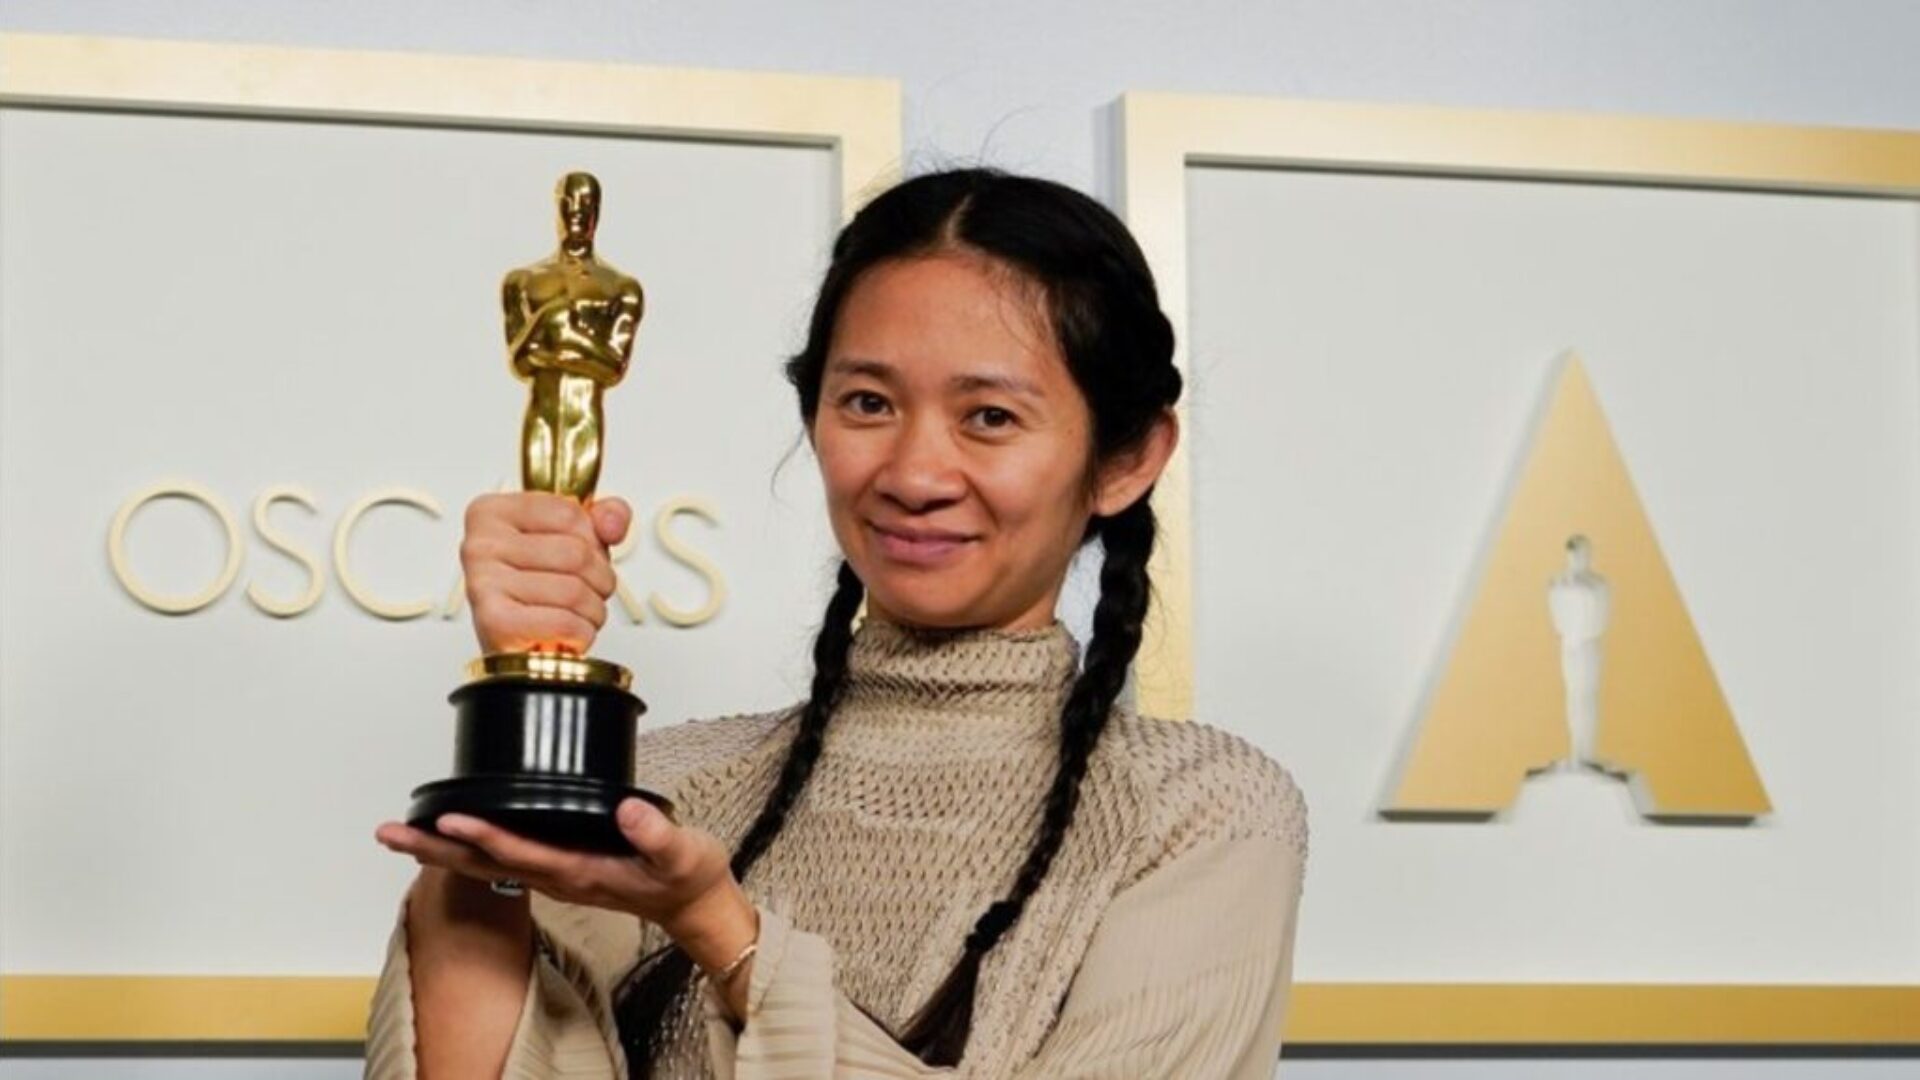 Asian actress holding Oscar